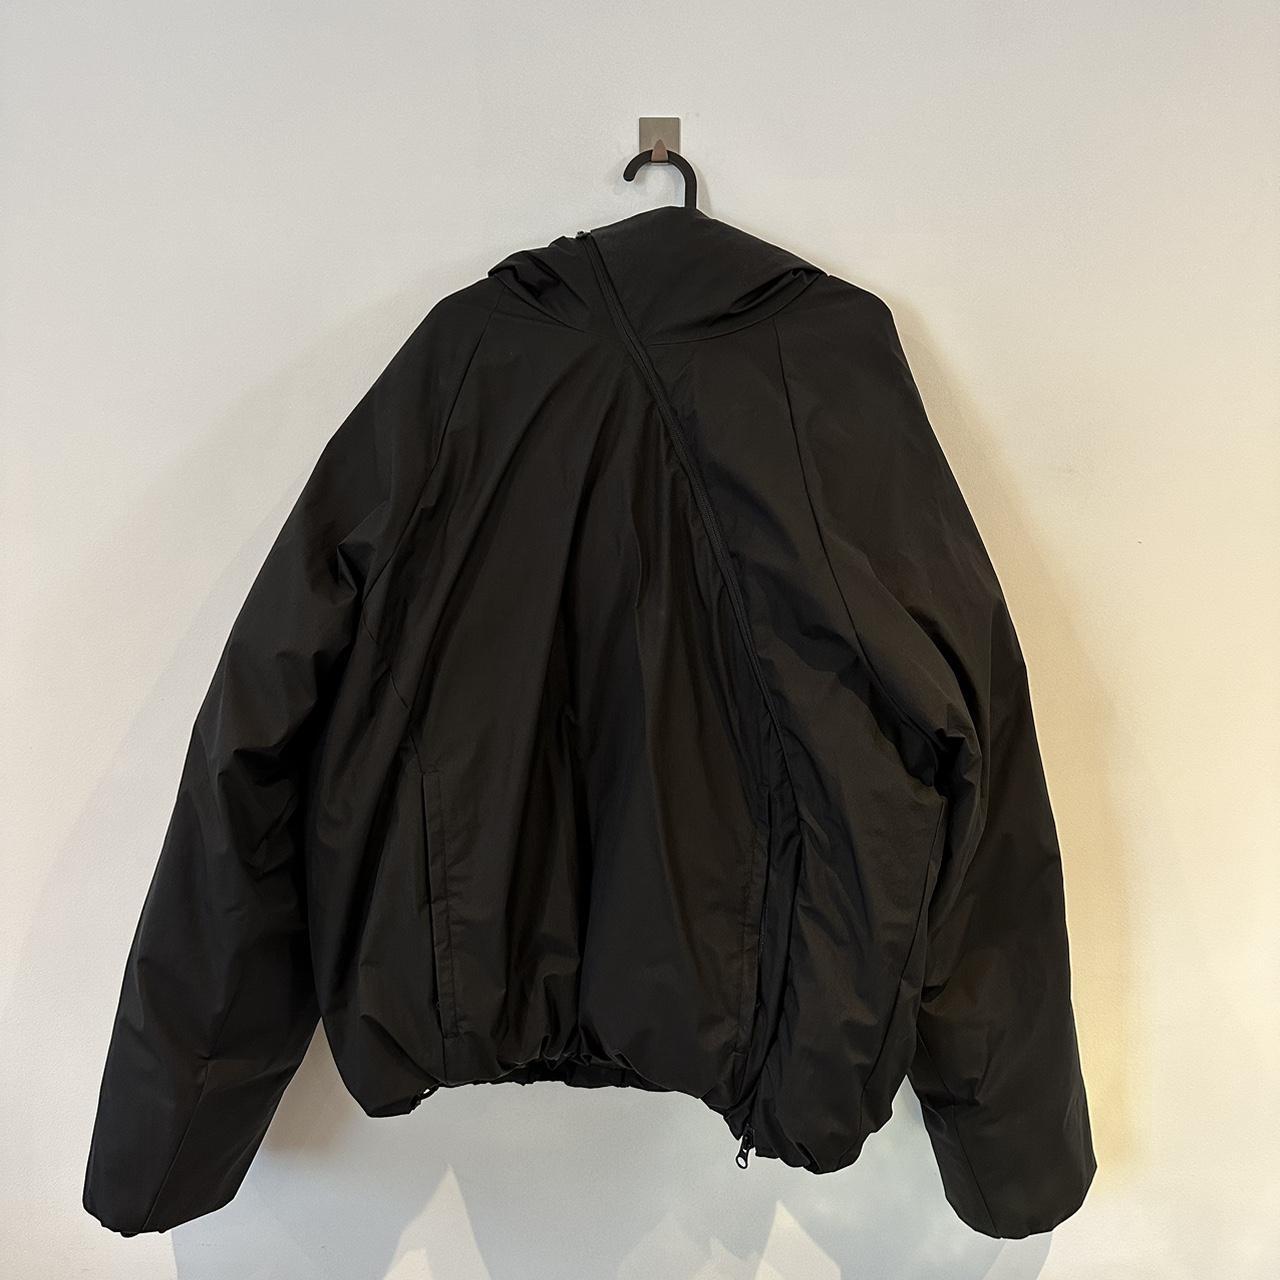 Black PAF puffer jacket Size L Has adjustable... - Depop